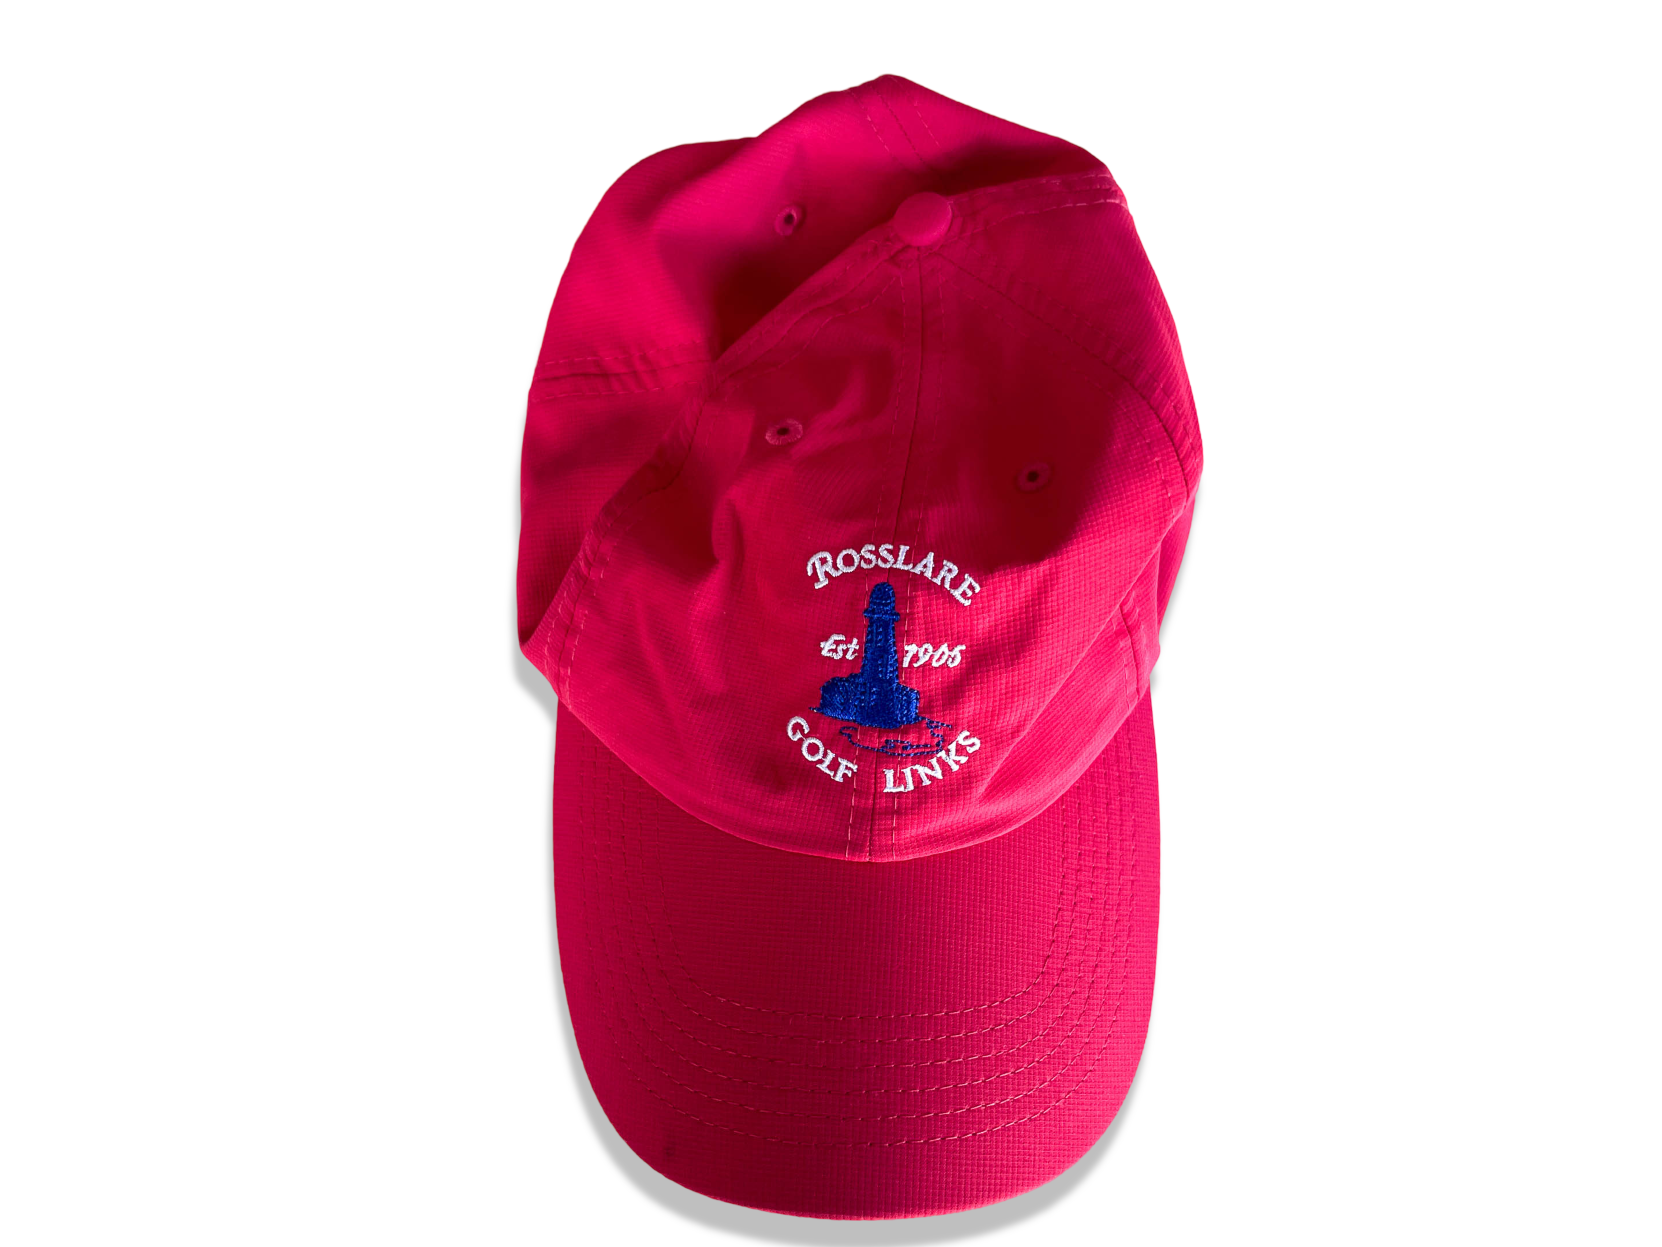 Vintage Imperial sport Rosslare Golf link crest 90's baseball red cap| SKU 4361